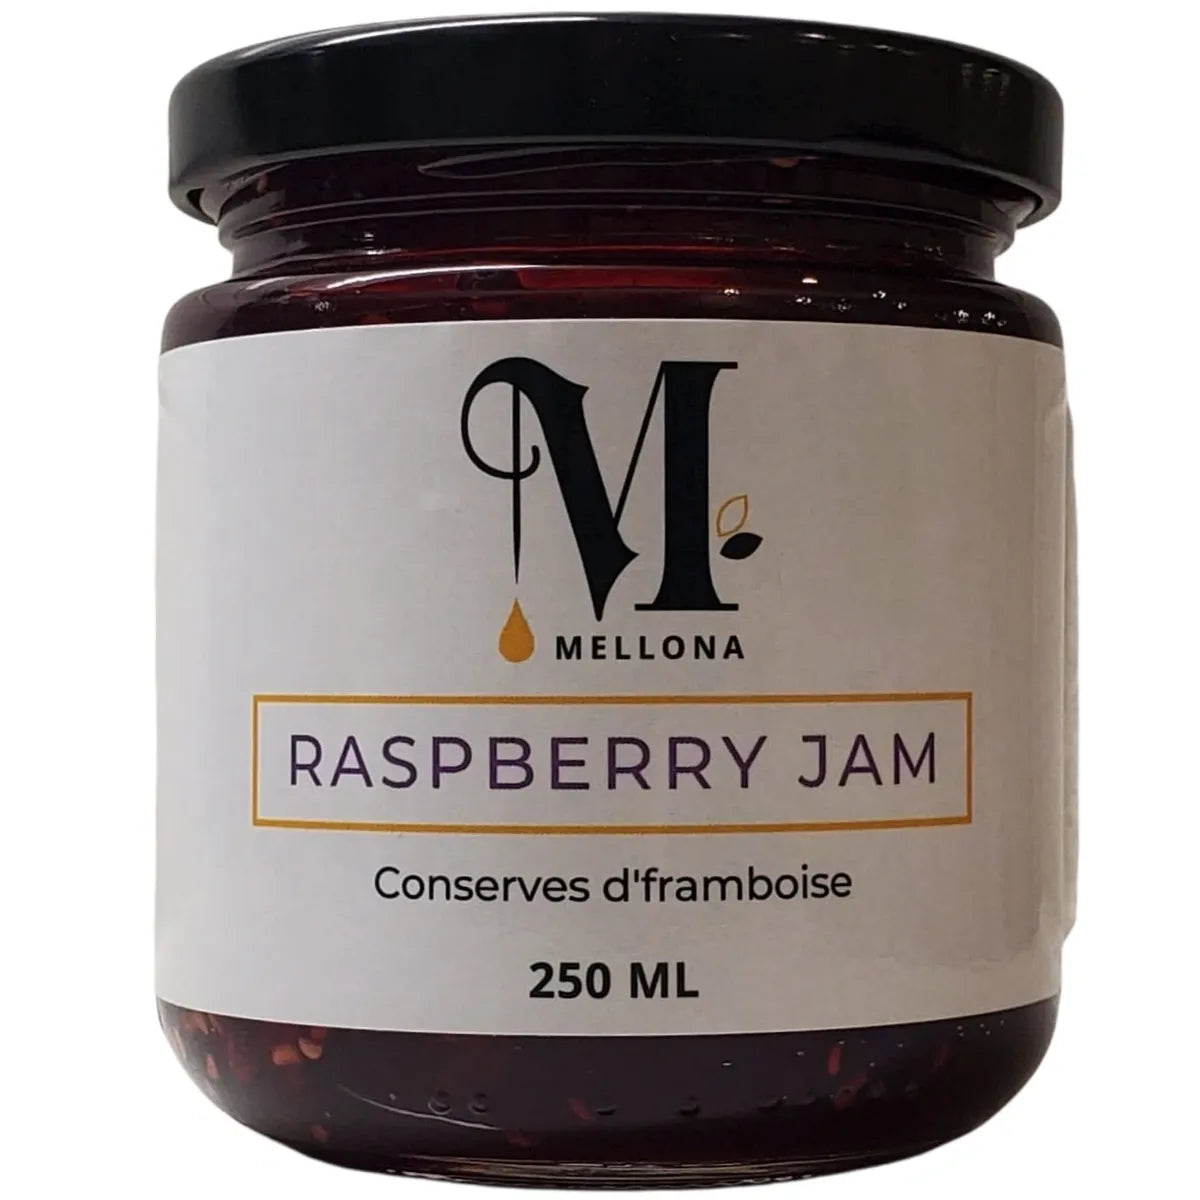 Raspberry Jam - Merlot Infused